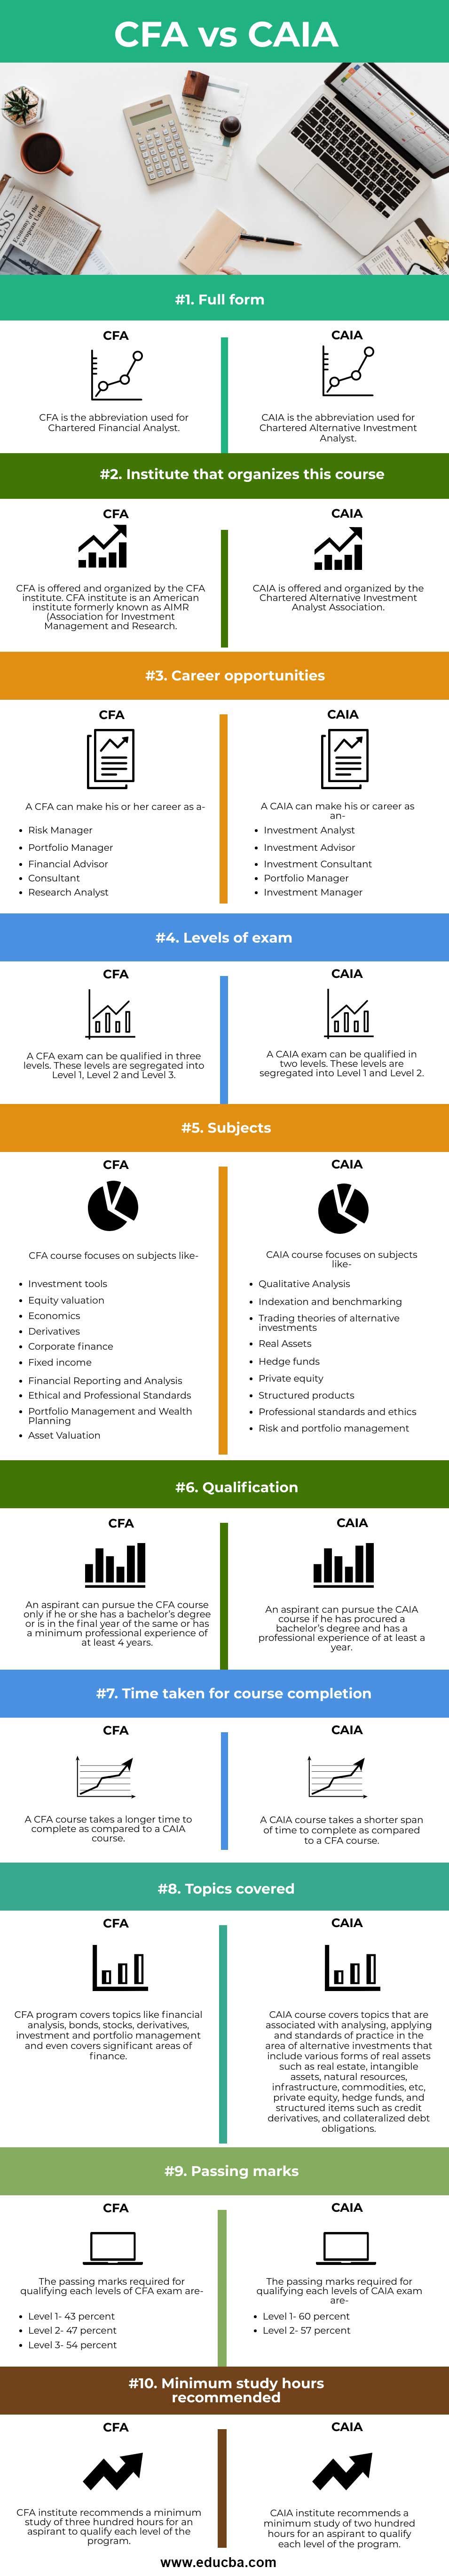 CFA-vs-CAIA-info